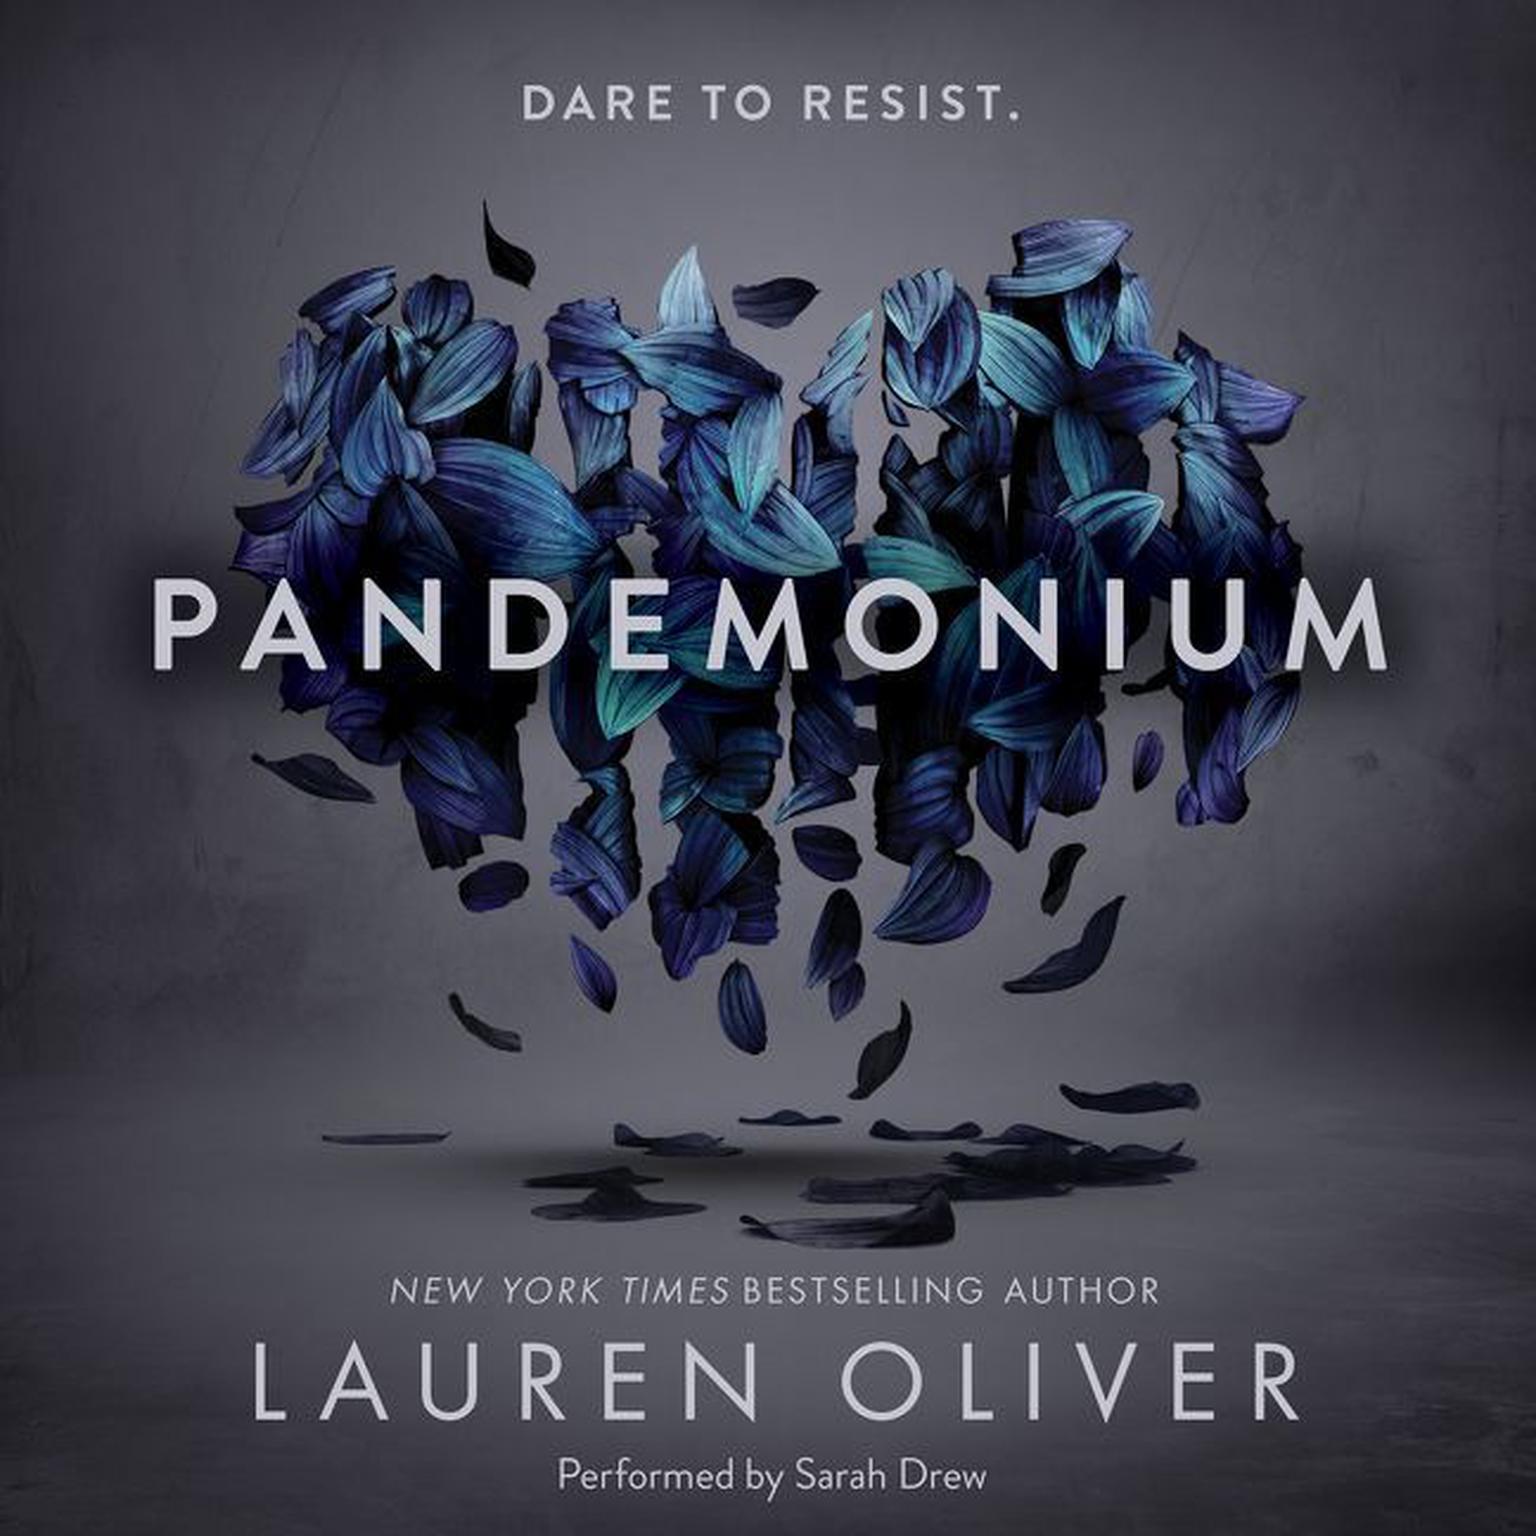 Pandemonium Audiobook, by Lauren Oliver